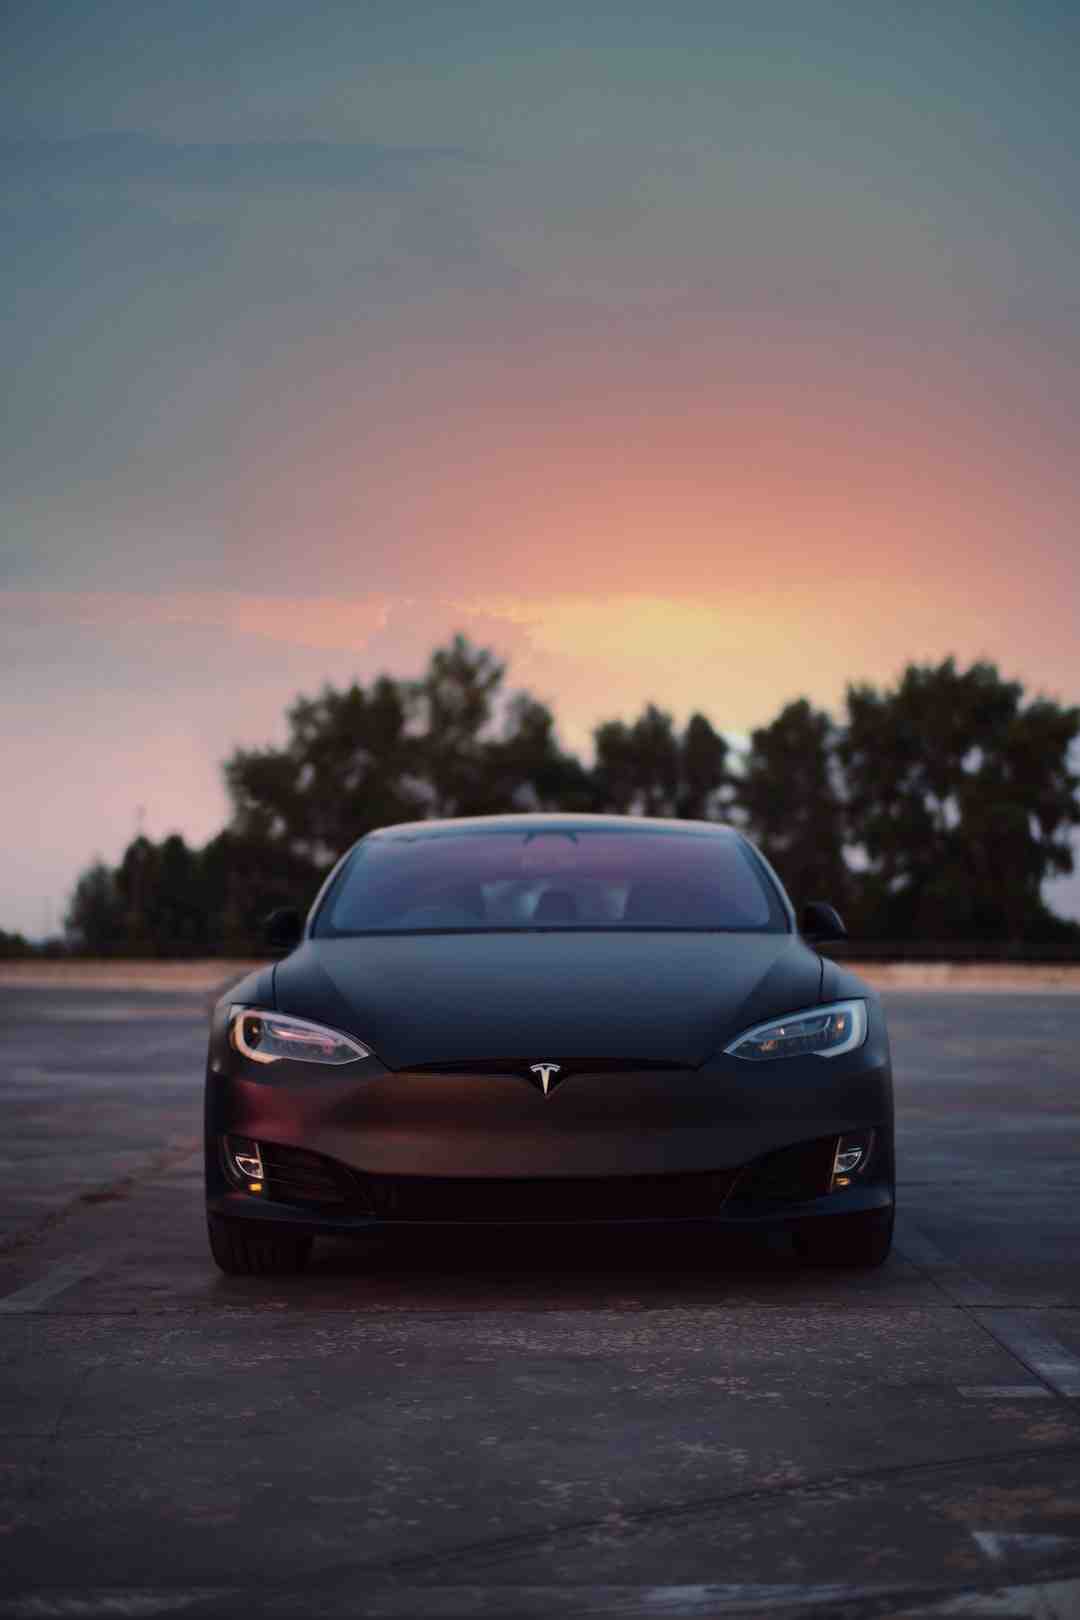 Pourquoi Elon Musk à appeler sa voiture Tesla ?